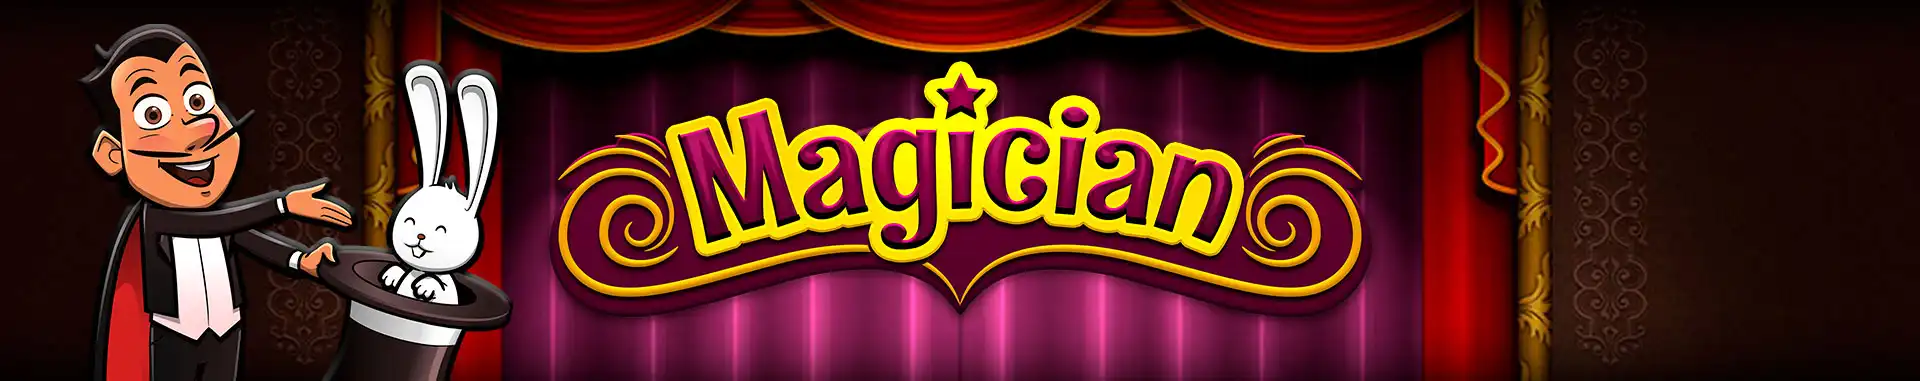 Video Bingo Online Magician